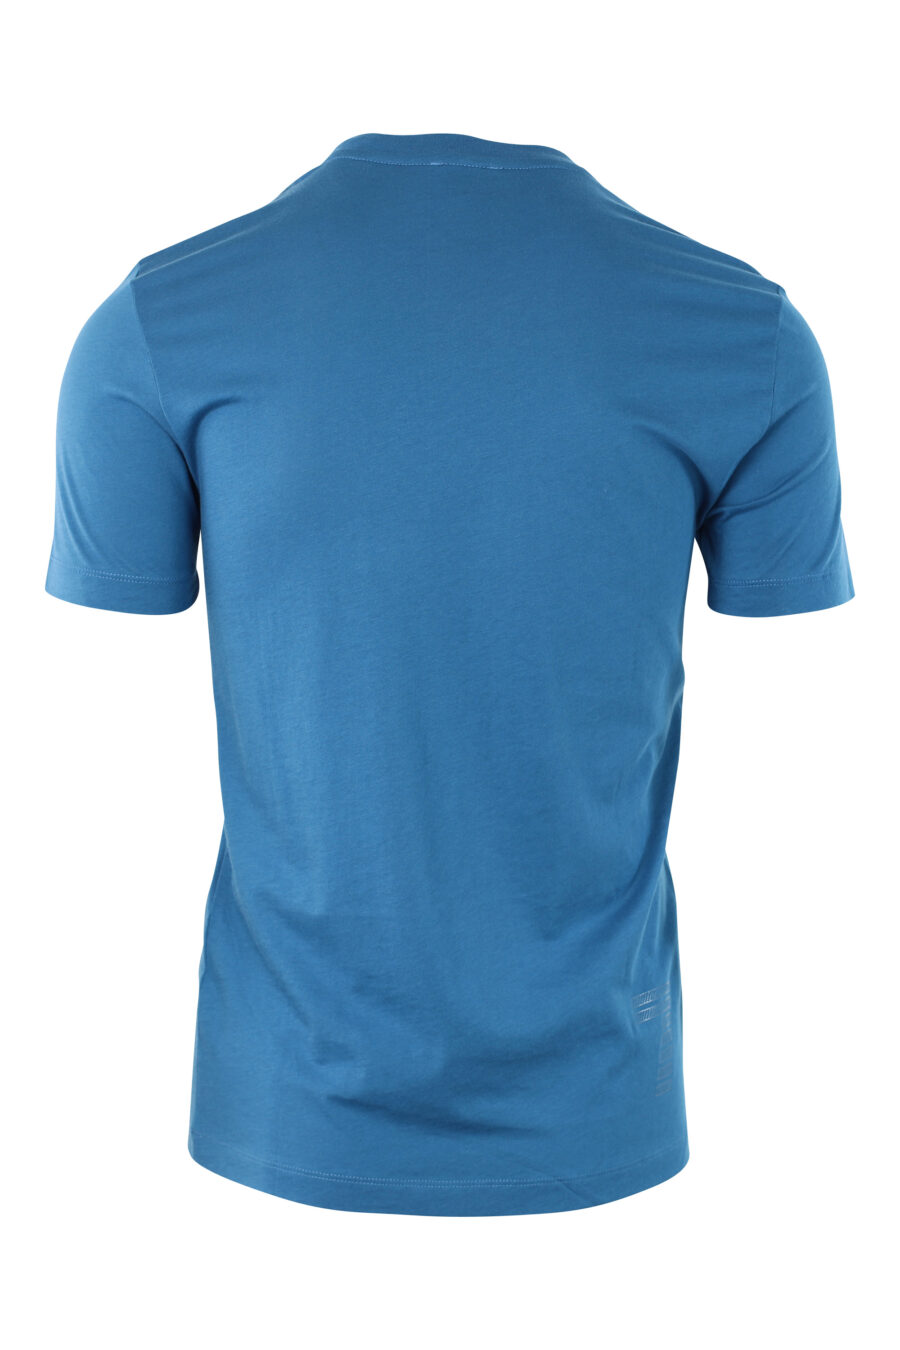 Camiseta azul oscura con maxilogo plateado de goma - IMG 3803